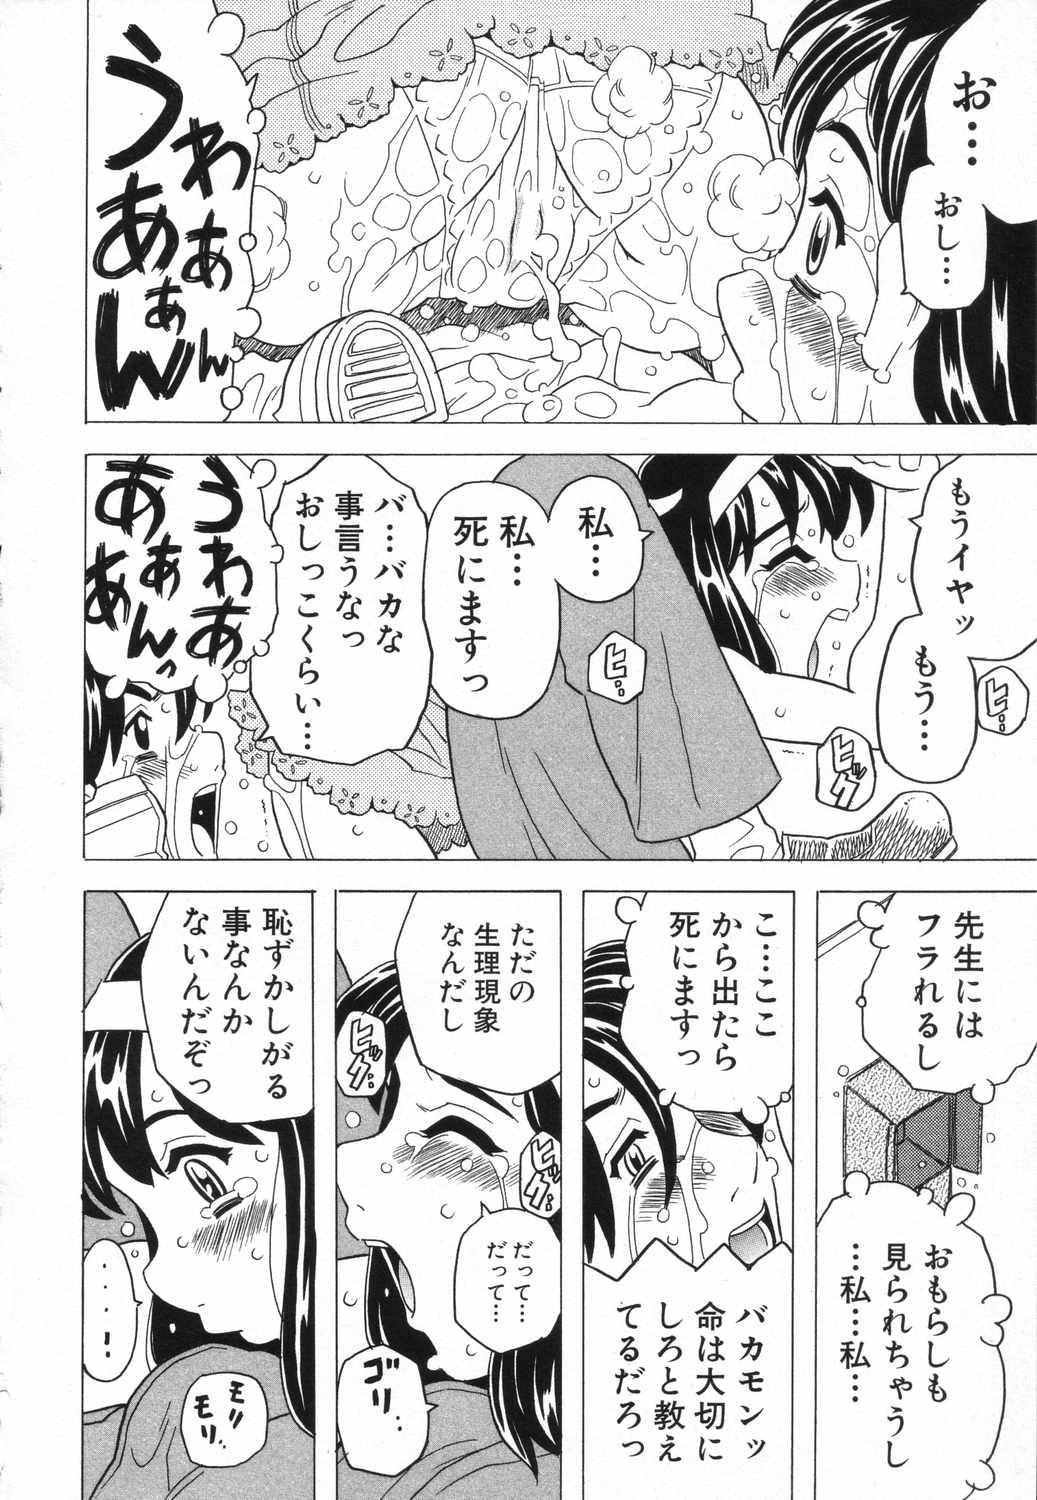 [Anthology] LOCO vol.5 Aki no Omorashi Musume Tokushuu page 15 full